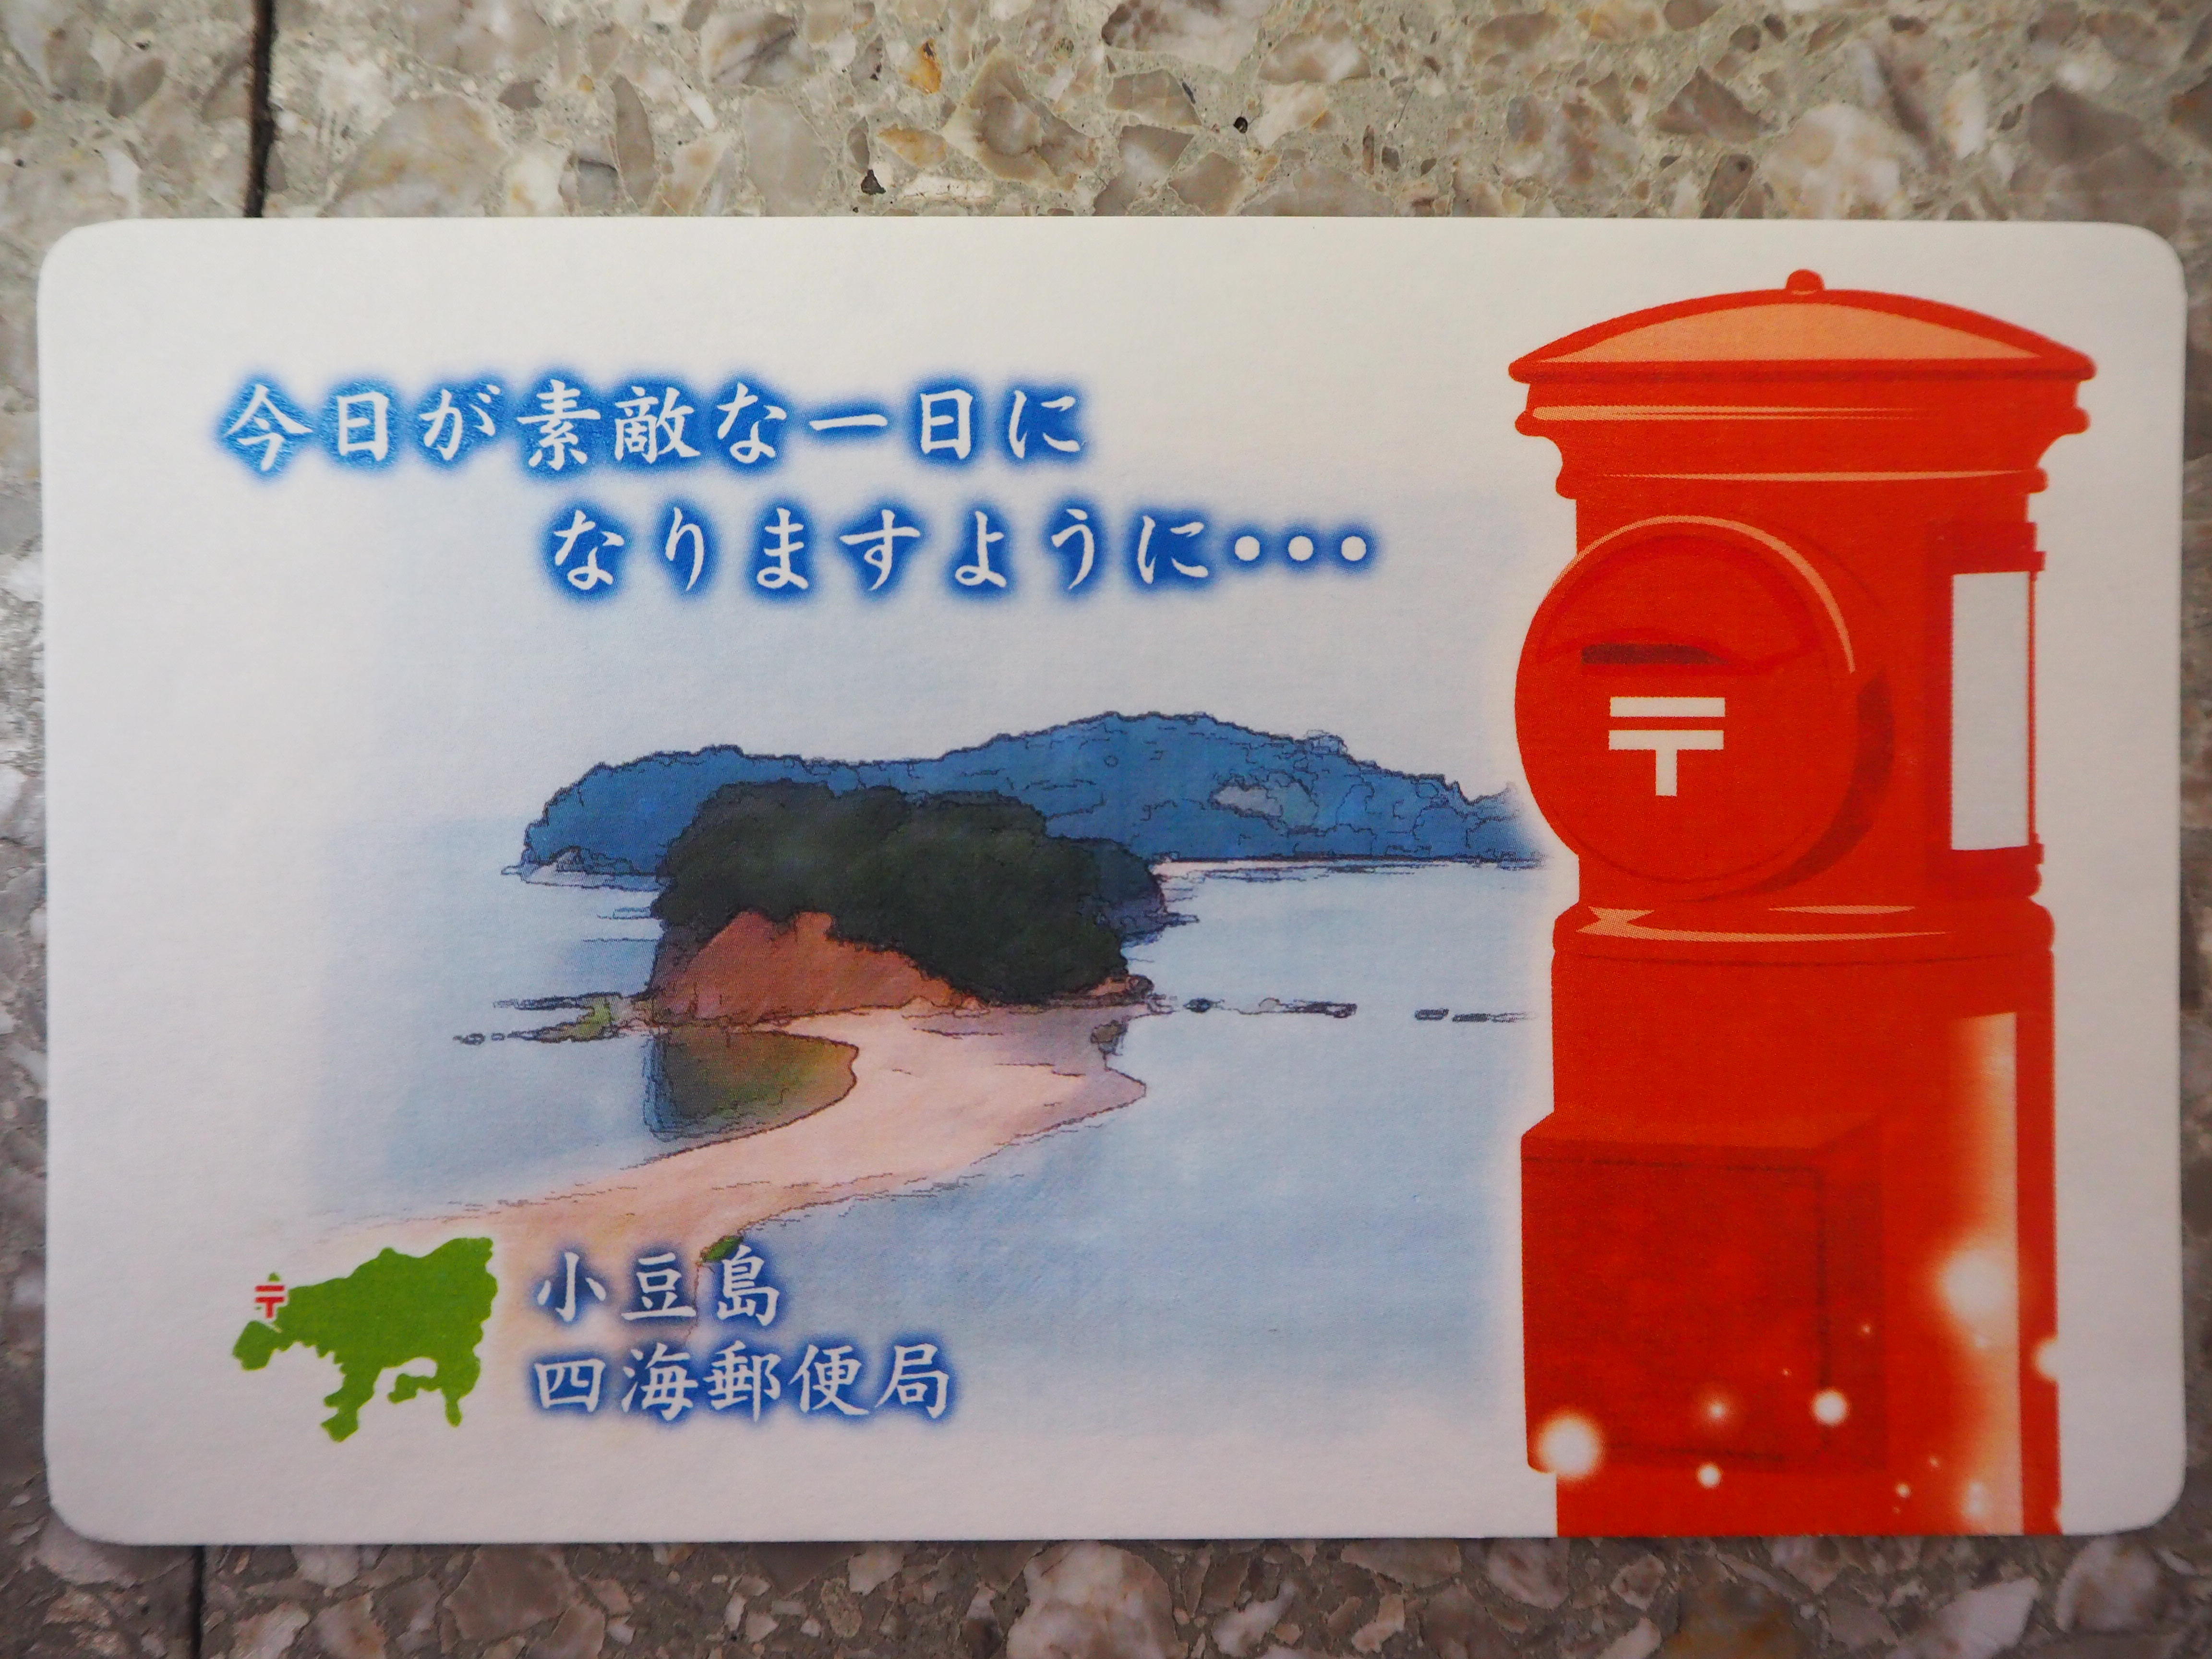 9 24 木 ゆうちょスタンプの旅 小豆島編 コラム コトバスツアー